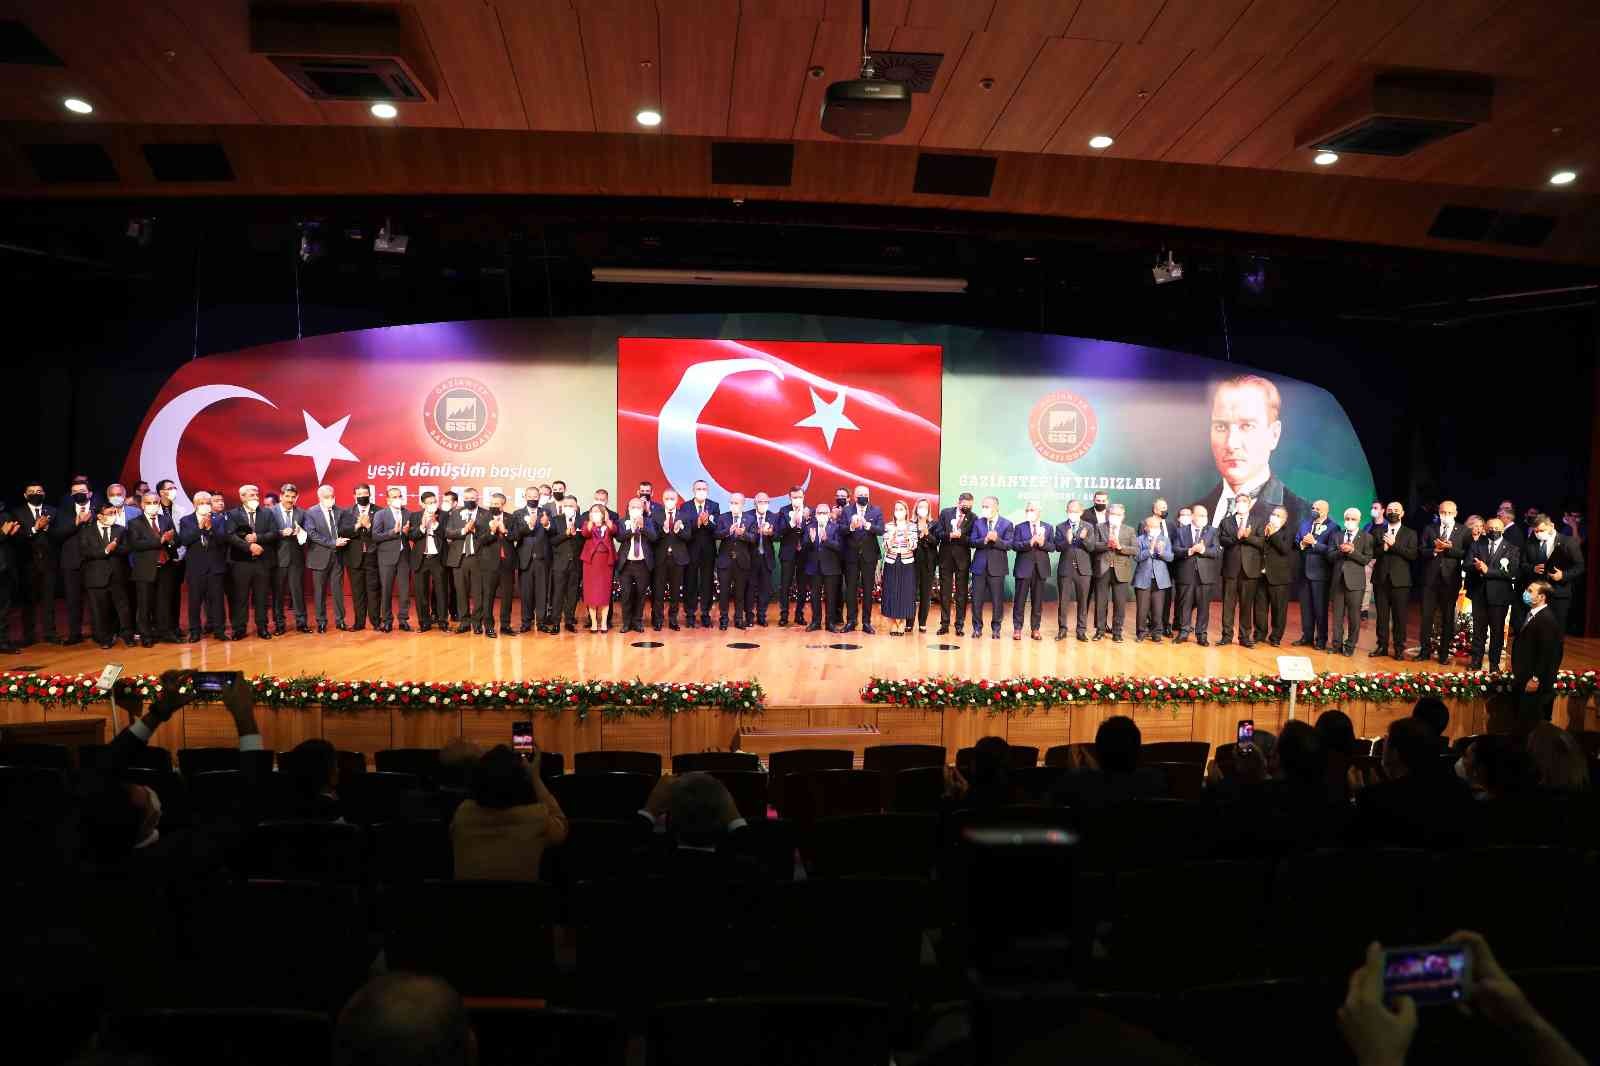 Gaziantep’in yıldızları ödül töreni #gaziantep